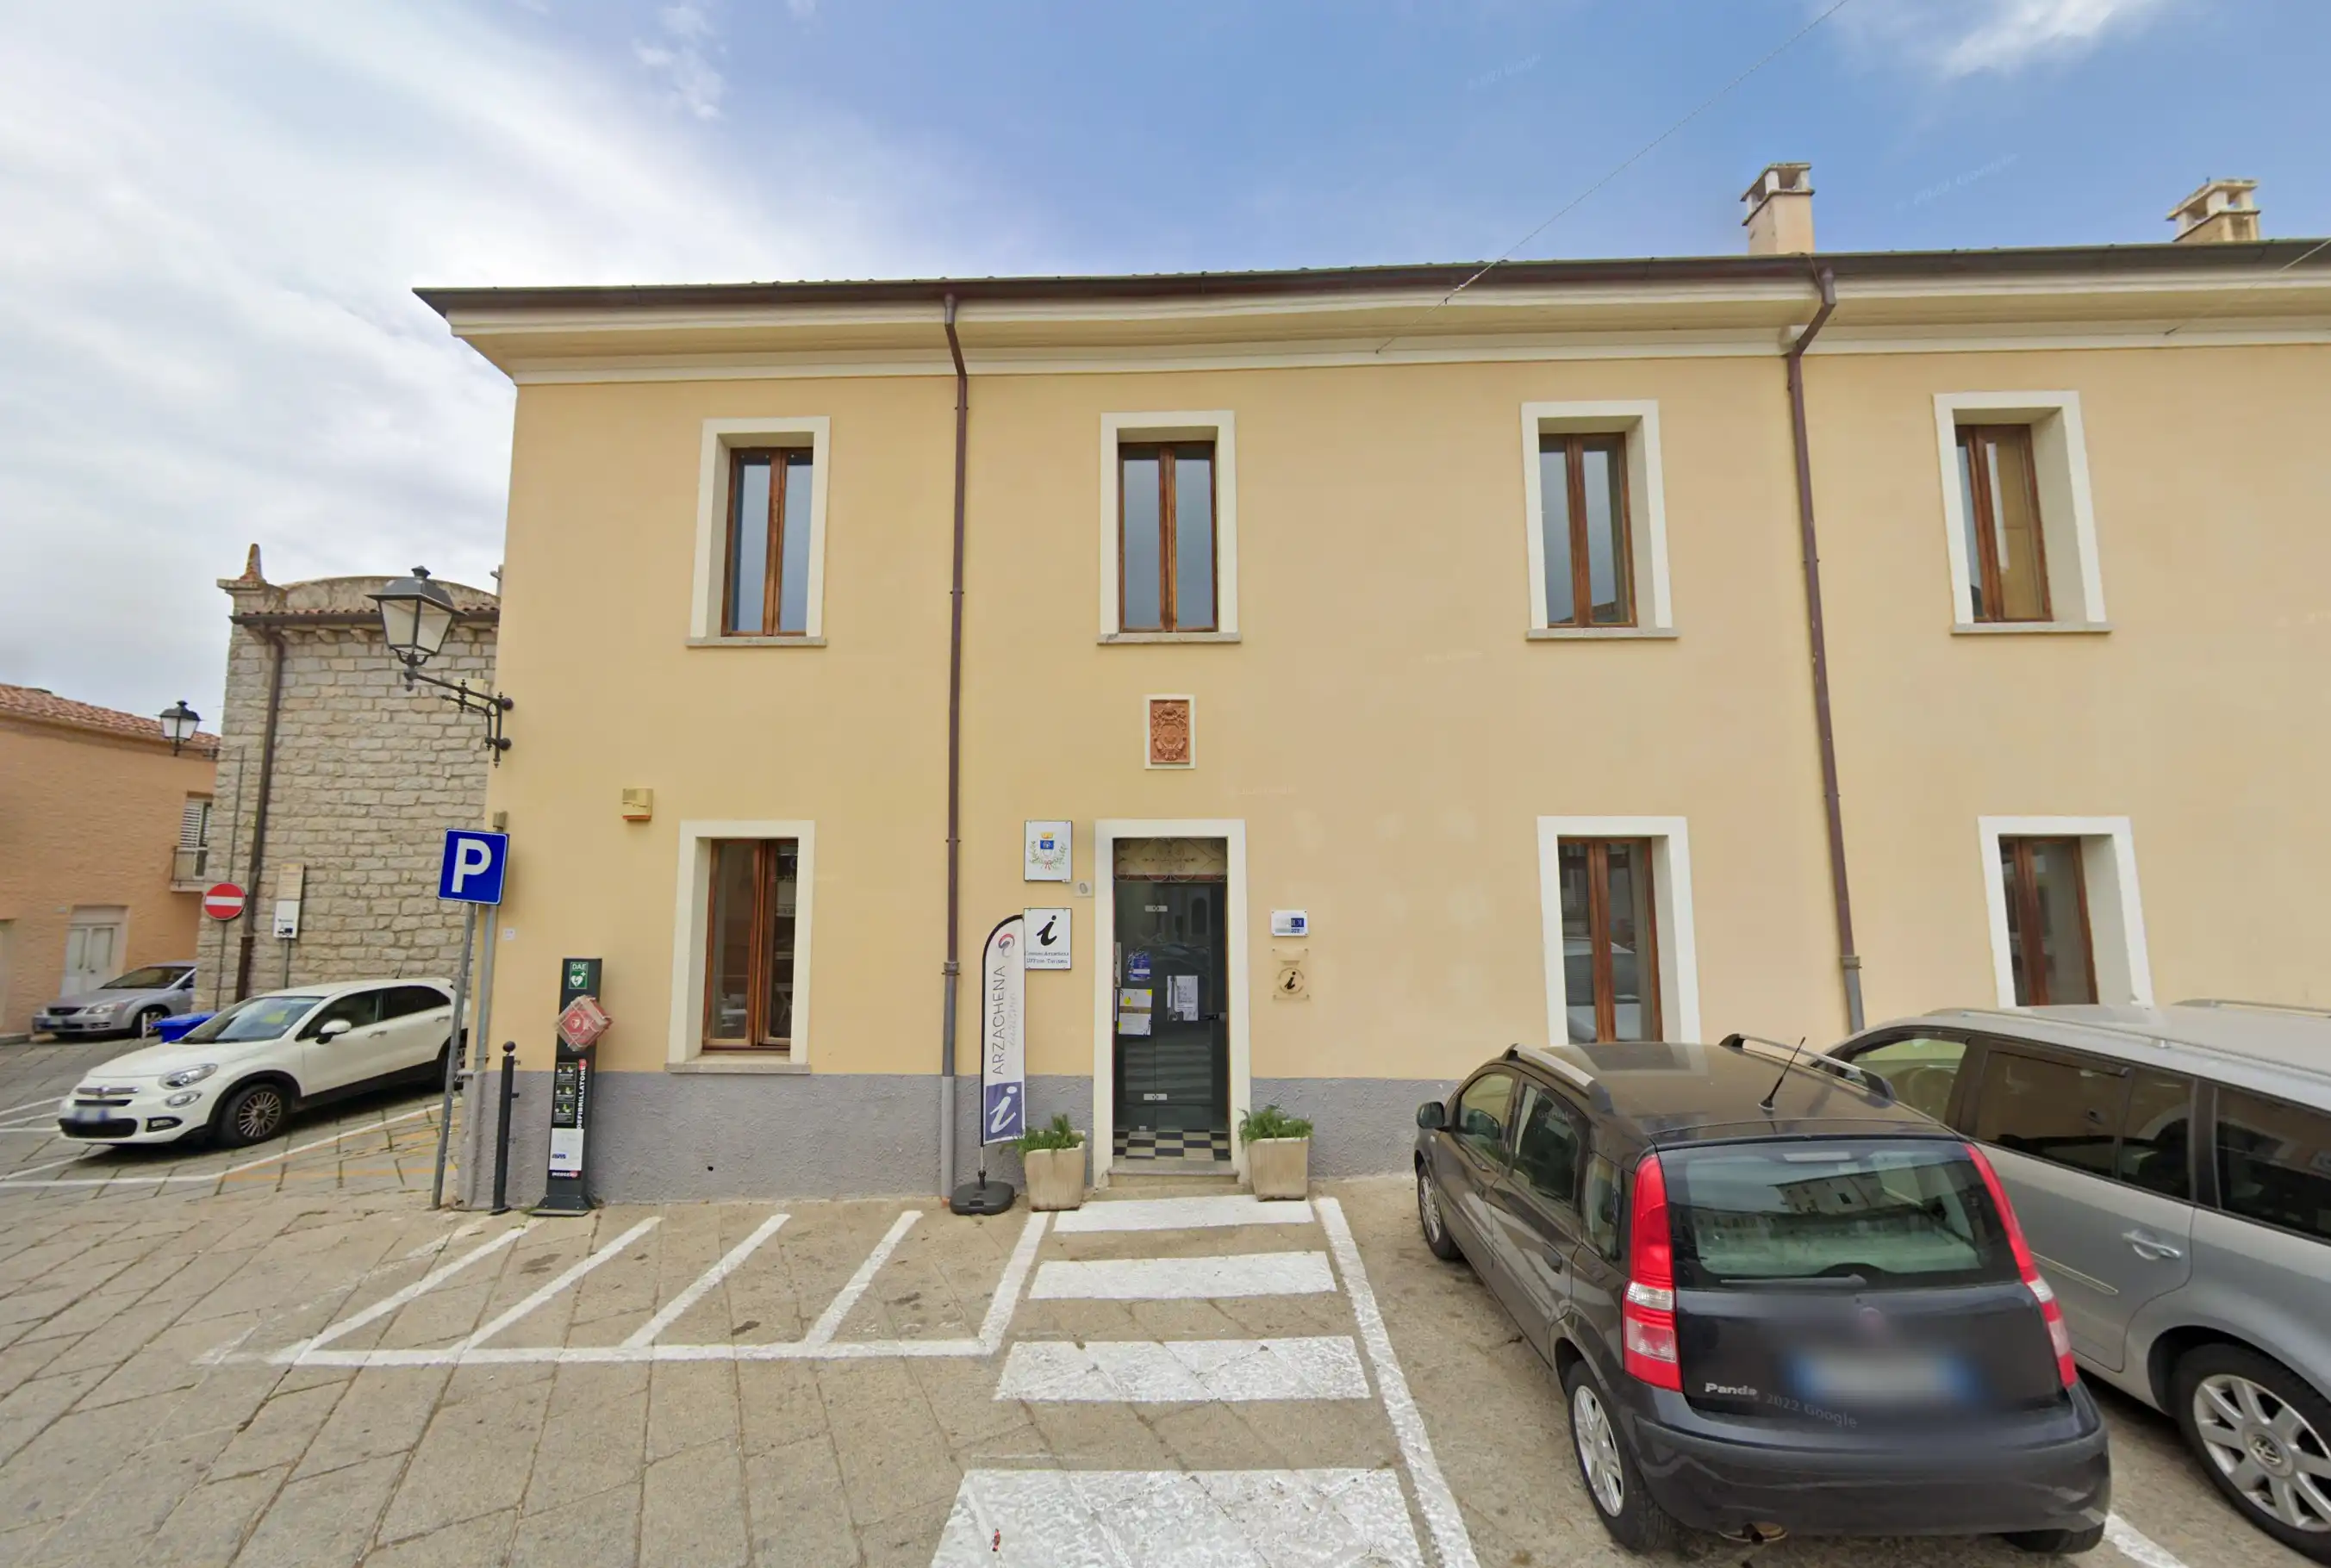 Uffici Comunali Piazza Risorgimento